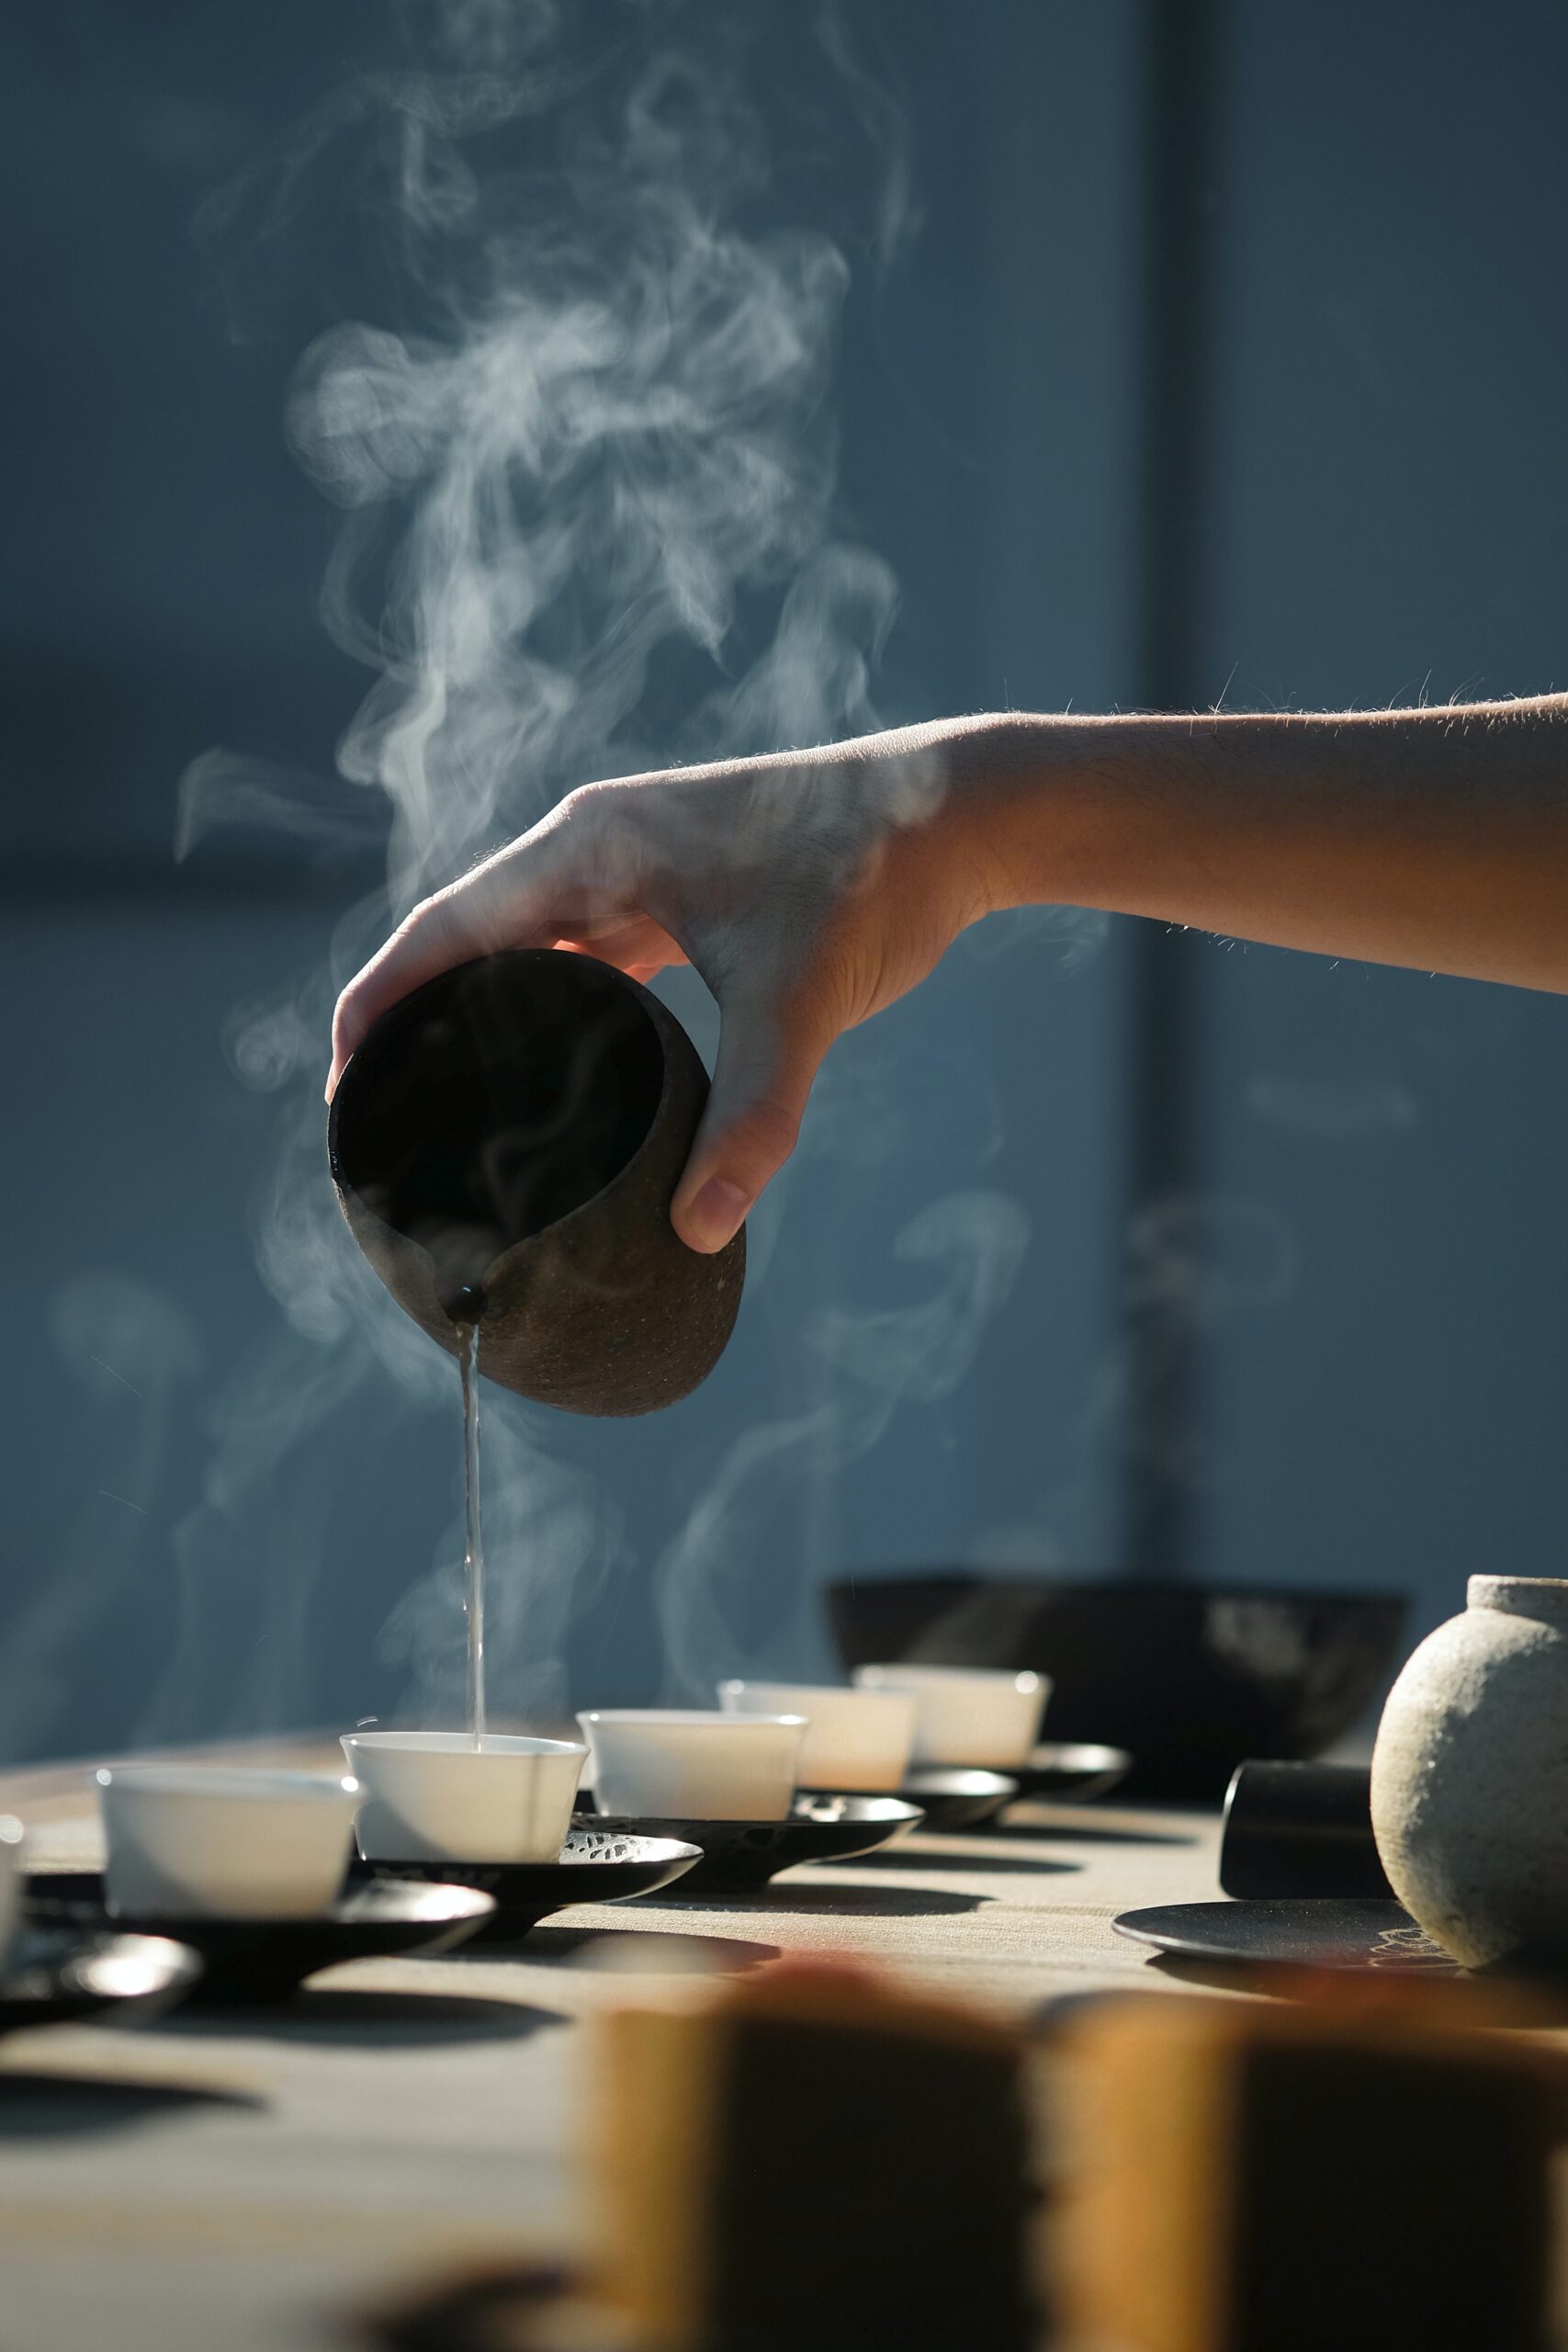 Specjalistyczny punkt sprzedaży herbat z całego świata